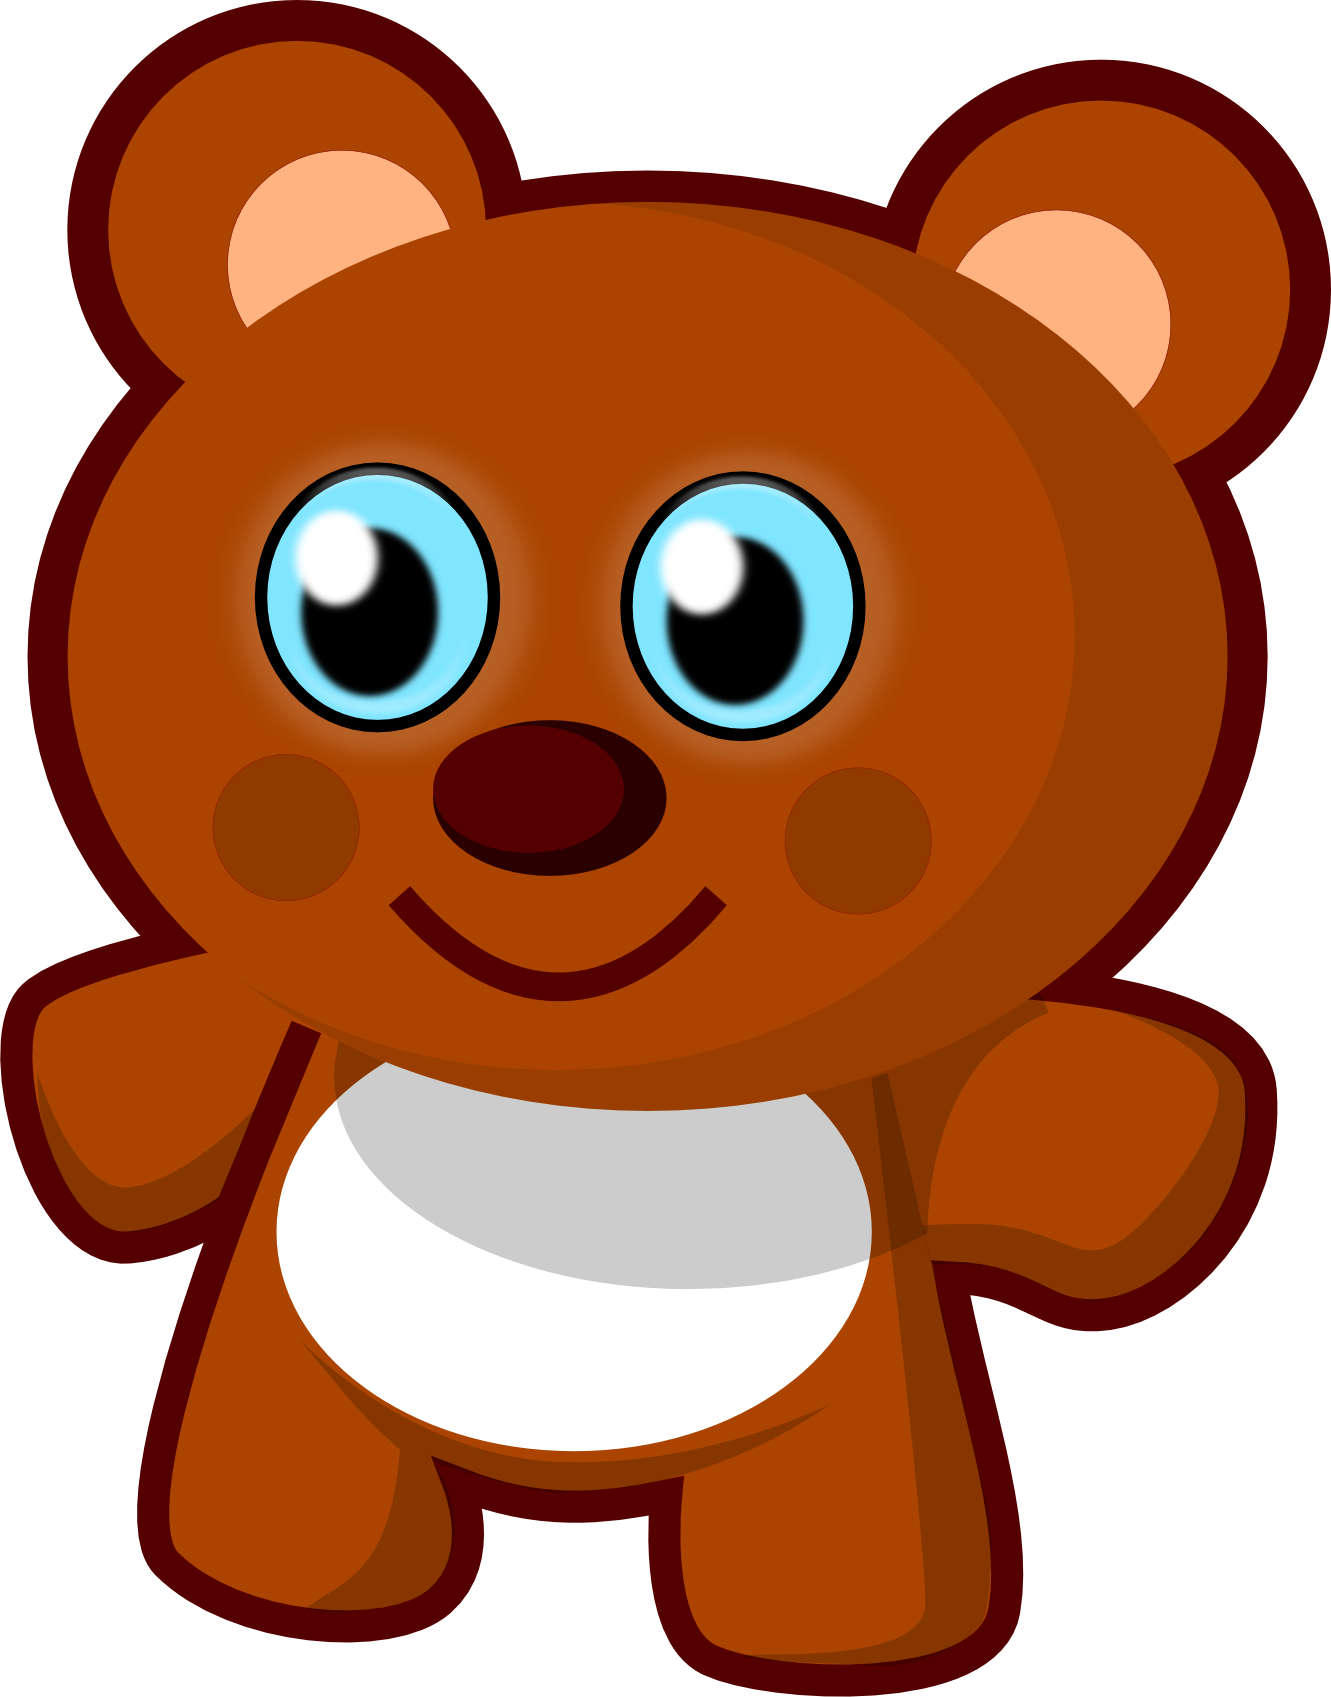 Clip Art: Cute Bear Teddy Bear Animal ...